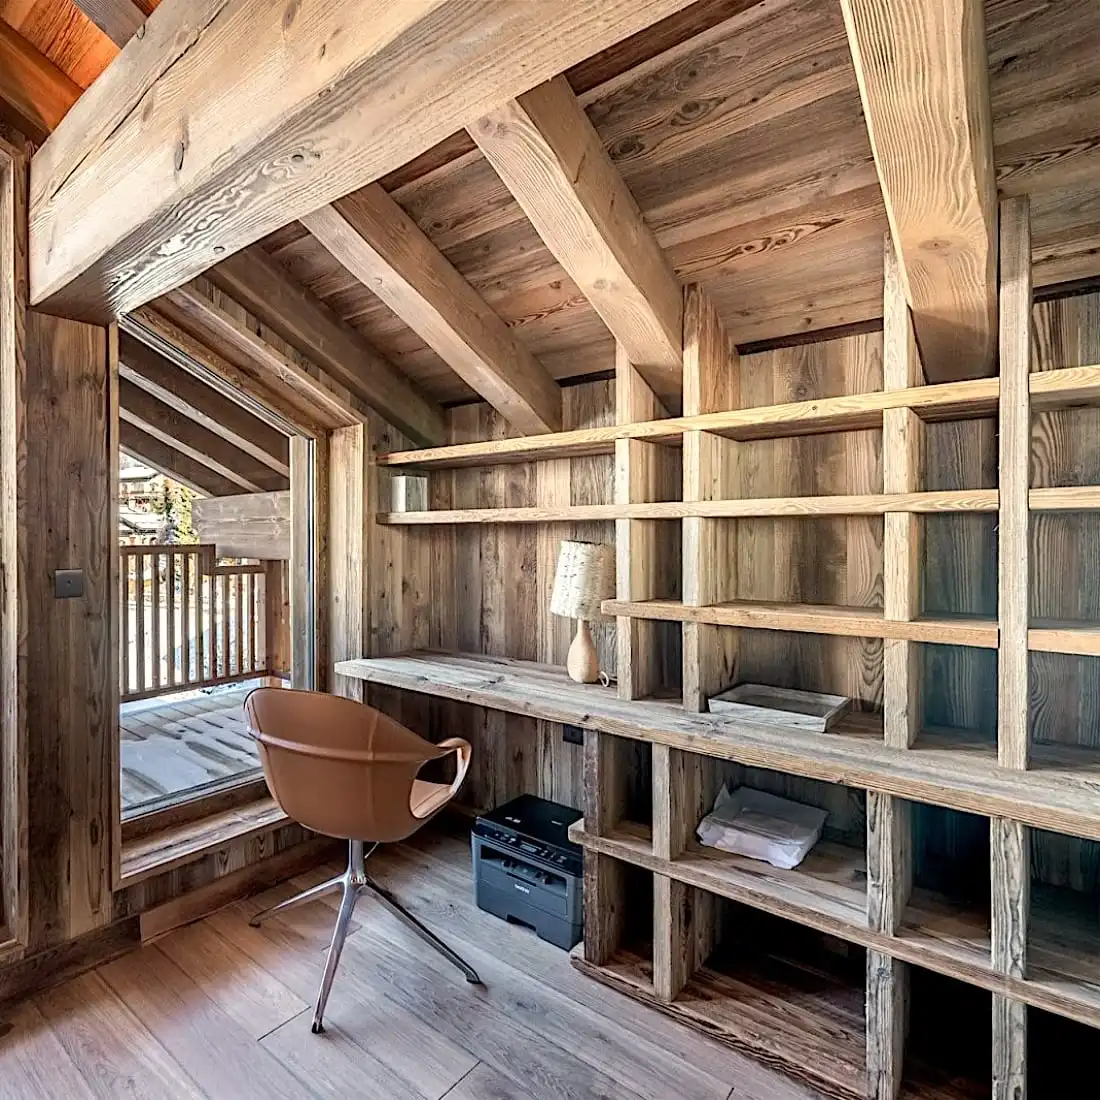  Un intérieur de cabine rustique et confortable comprenant une grande étagère, une chaise moderne et une porte à panneau 5 plis offrant une vue sur le balcon. 